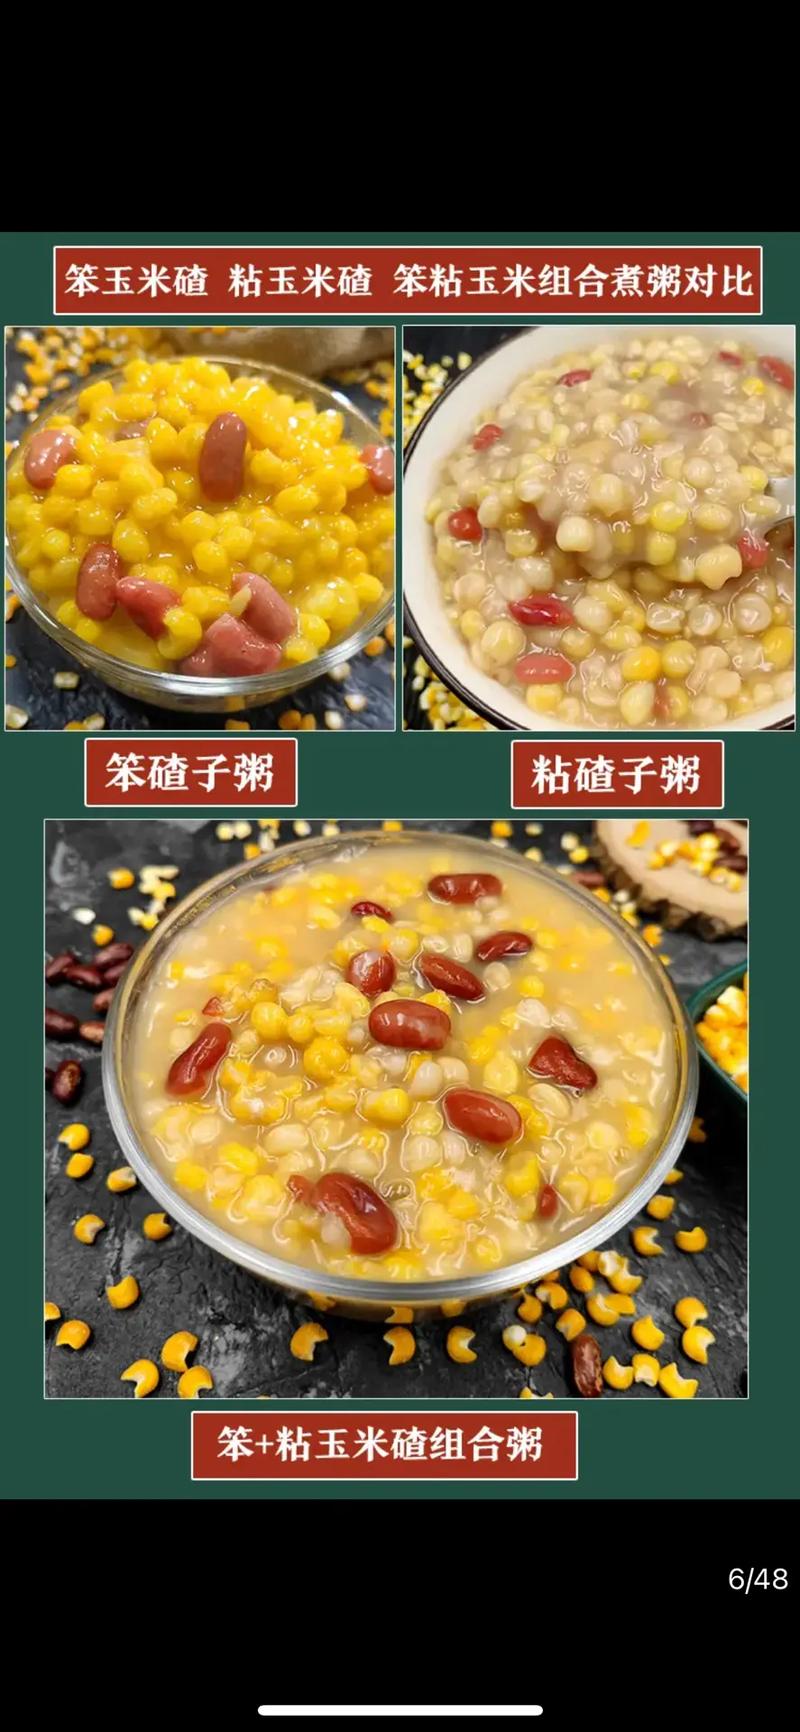 苞米碴子粥做法(1)